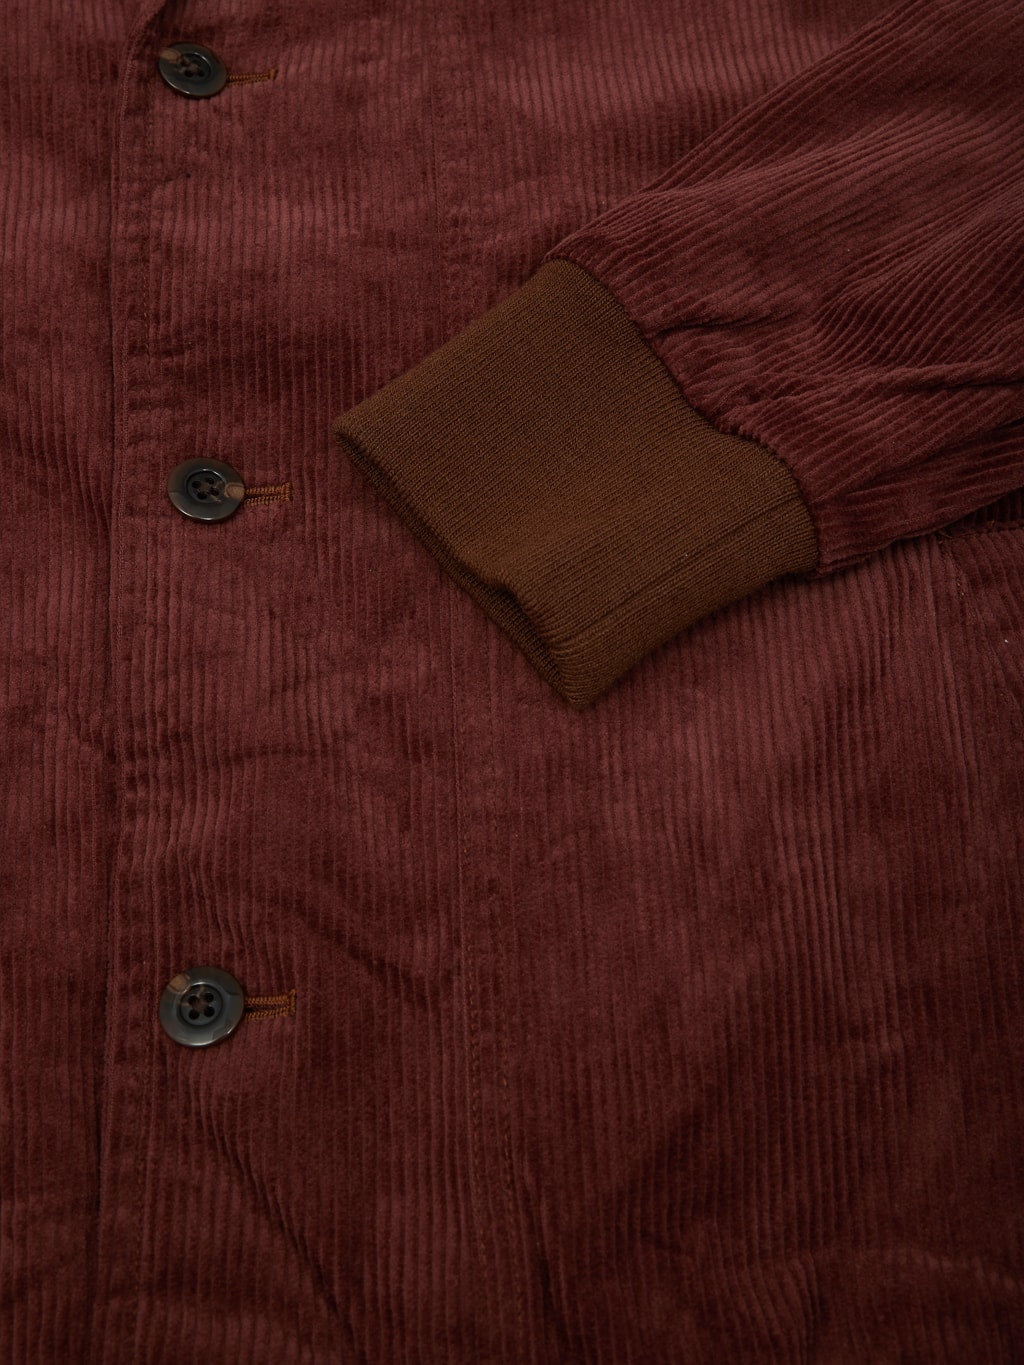 Tanuki Sazanami Corduro mud Dyed brown Jacket elastic cuff